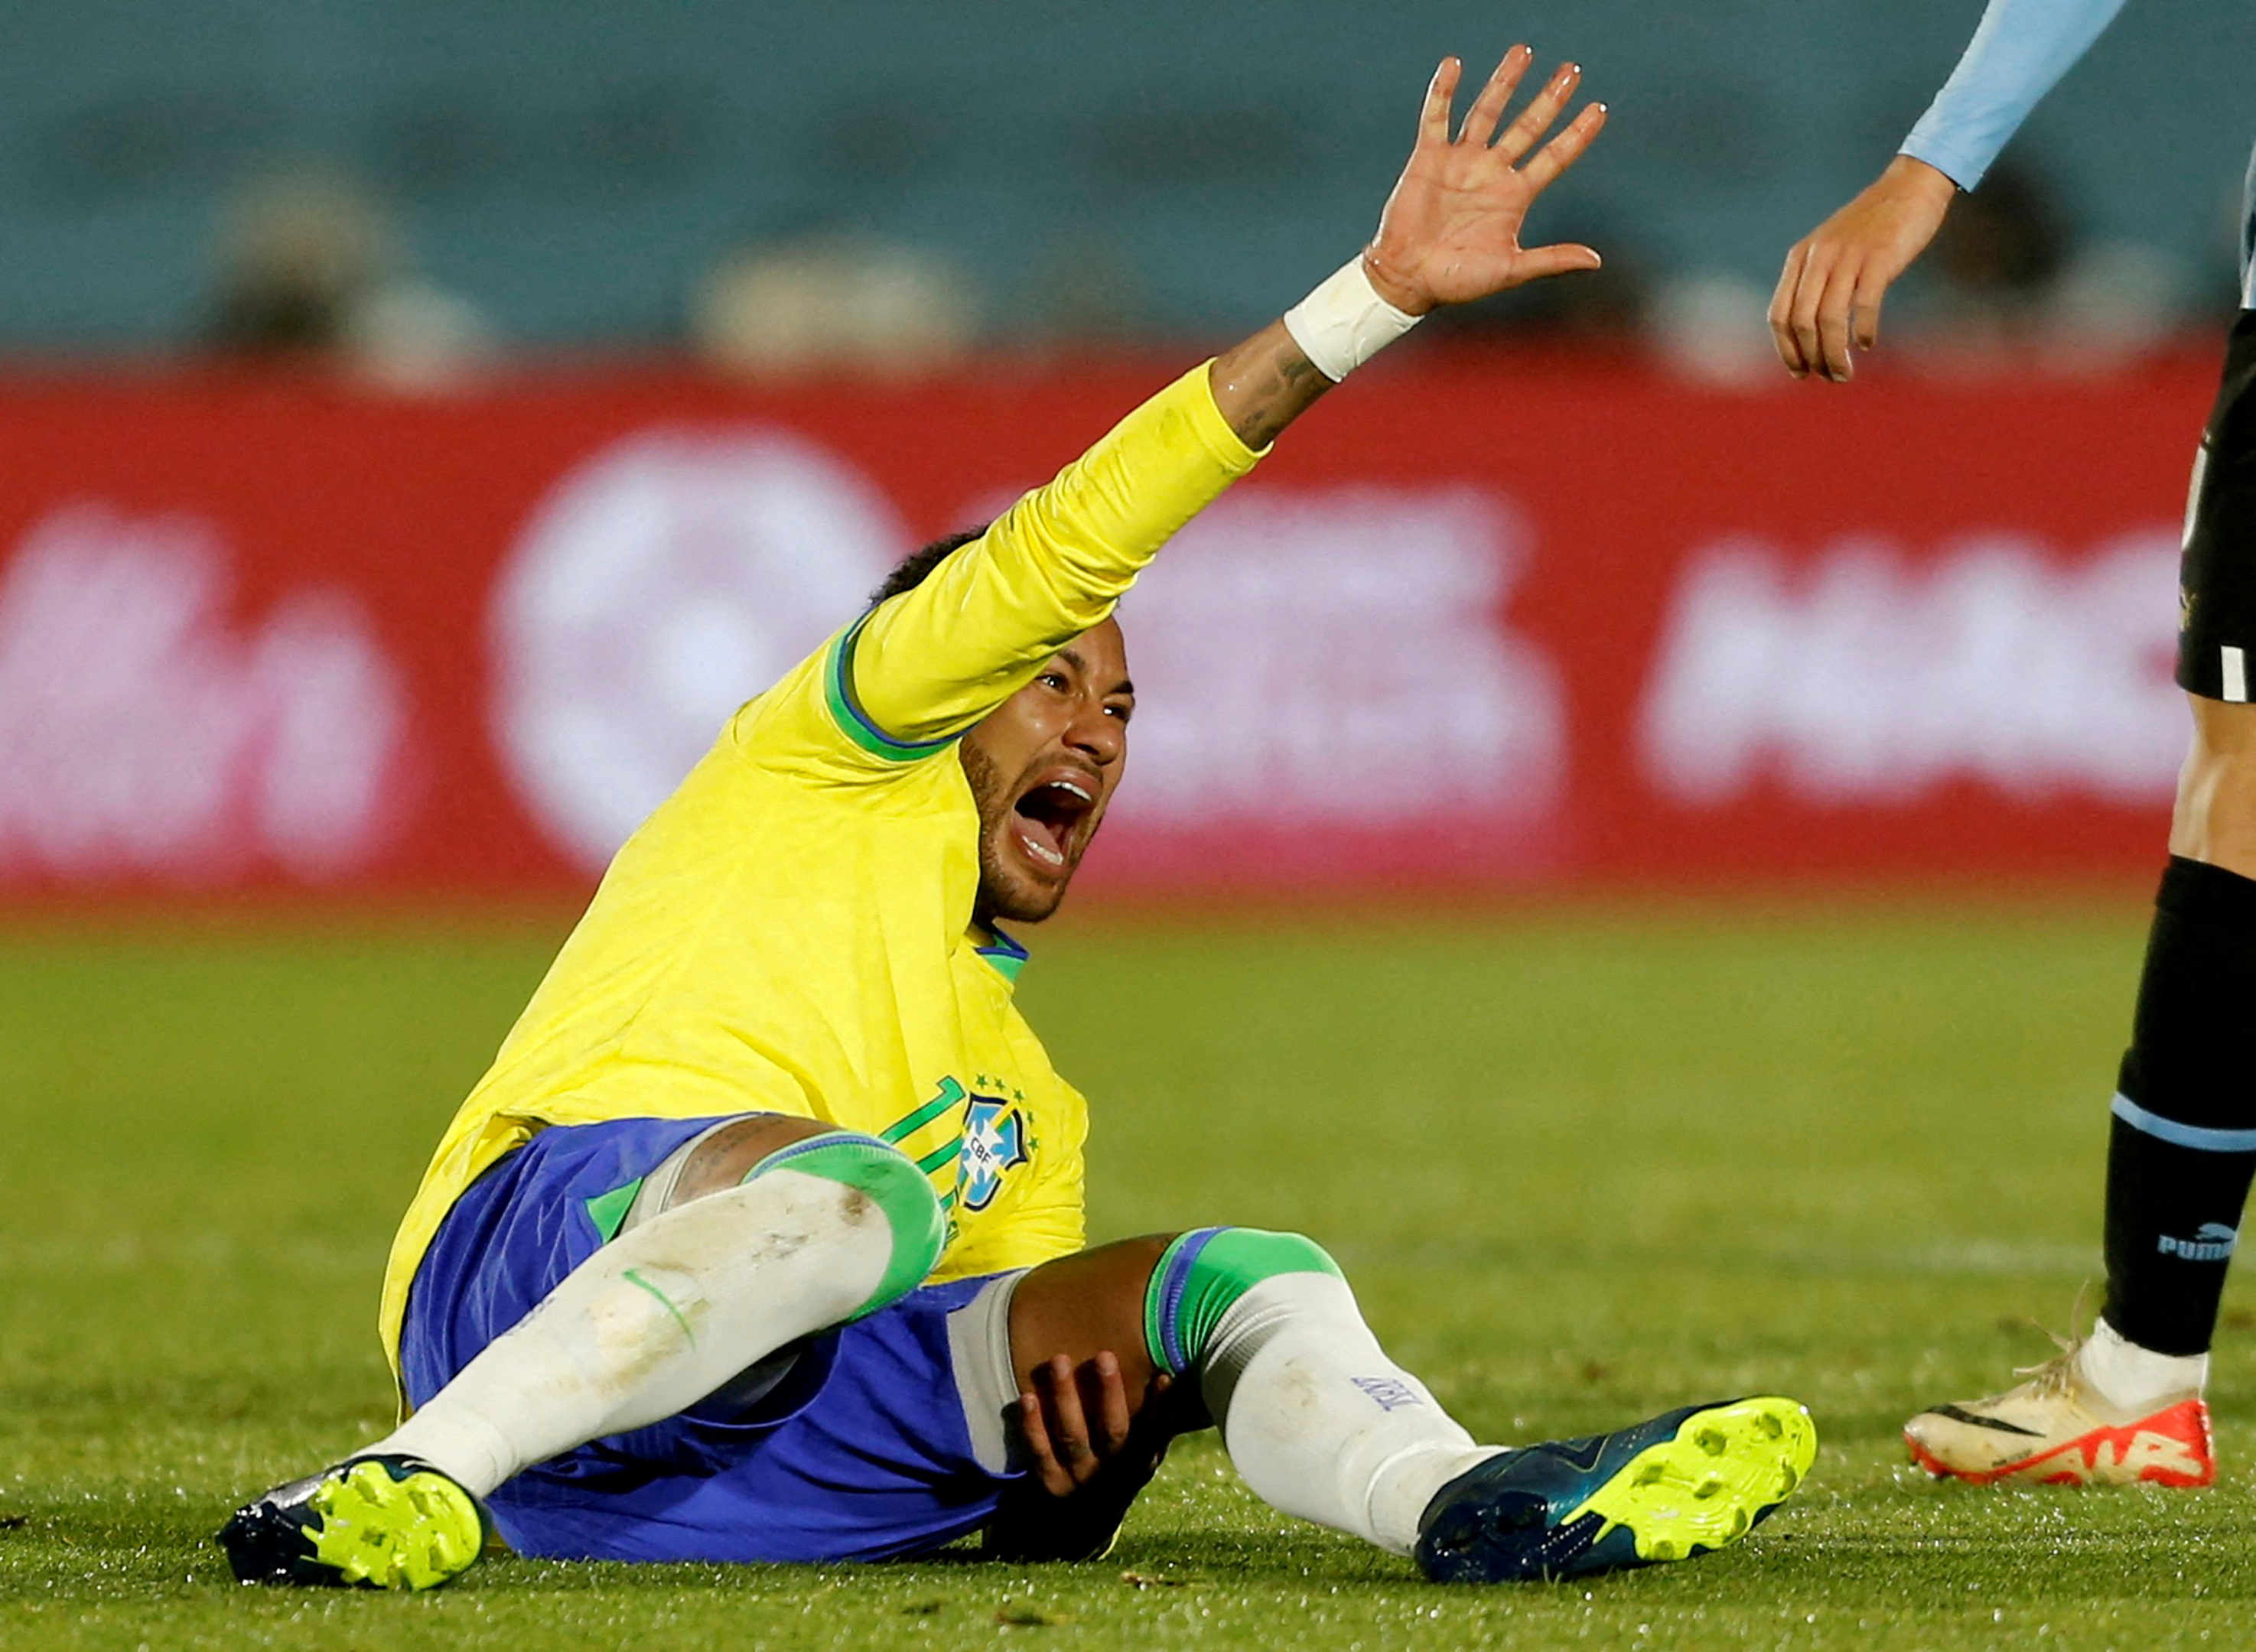 Procedimento foi conduzido pelo médico da Seleção Brasileira; lesão ocorreu na partida contra o Uruguai, no dia 17 de outubro